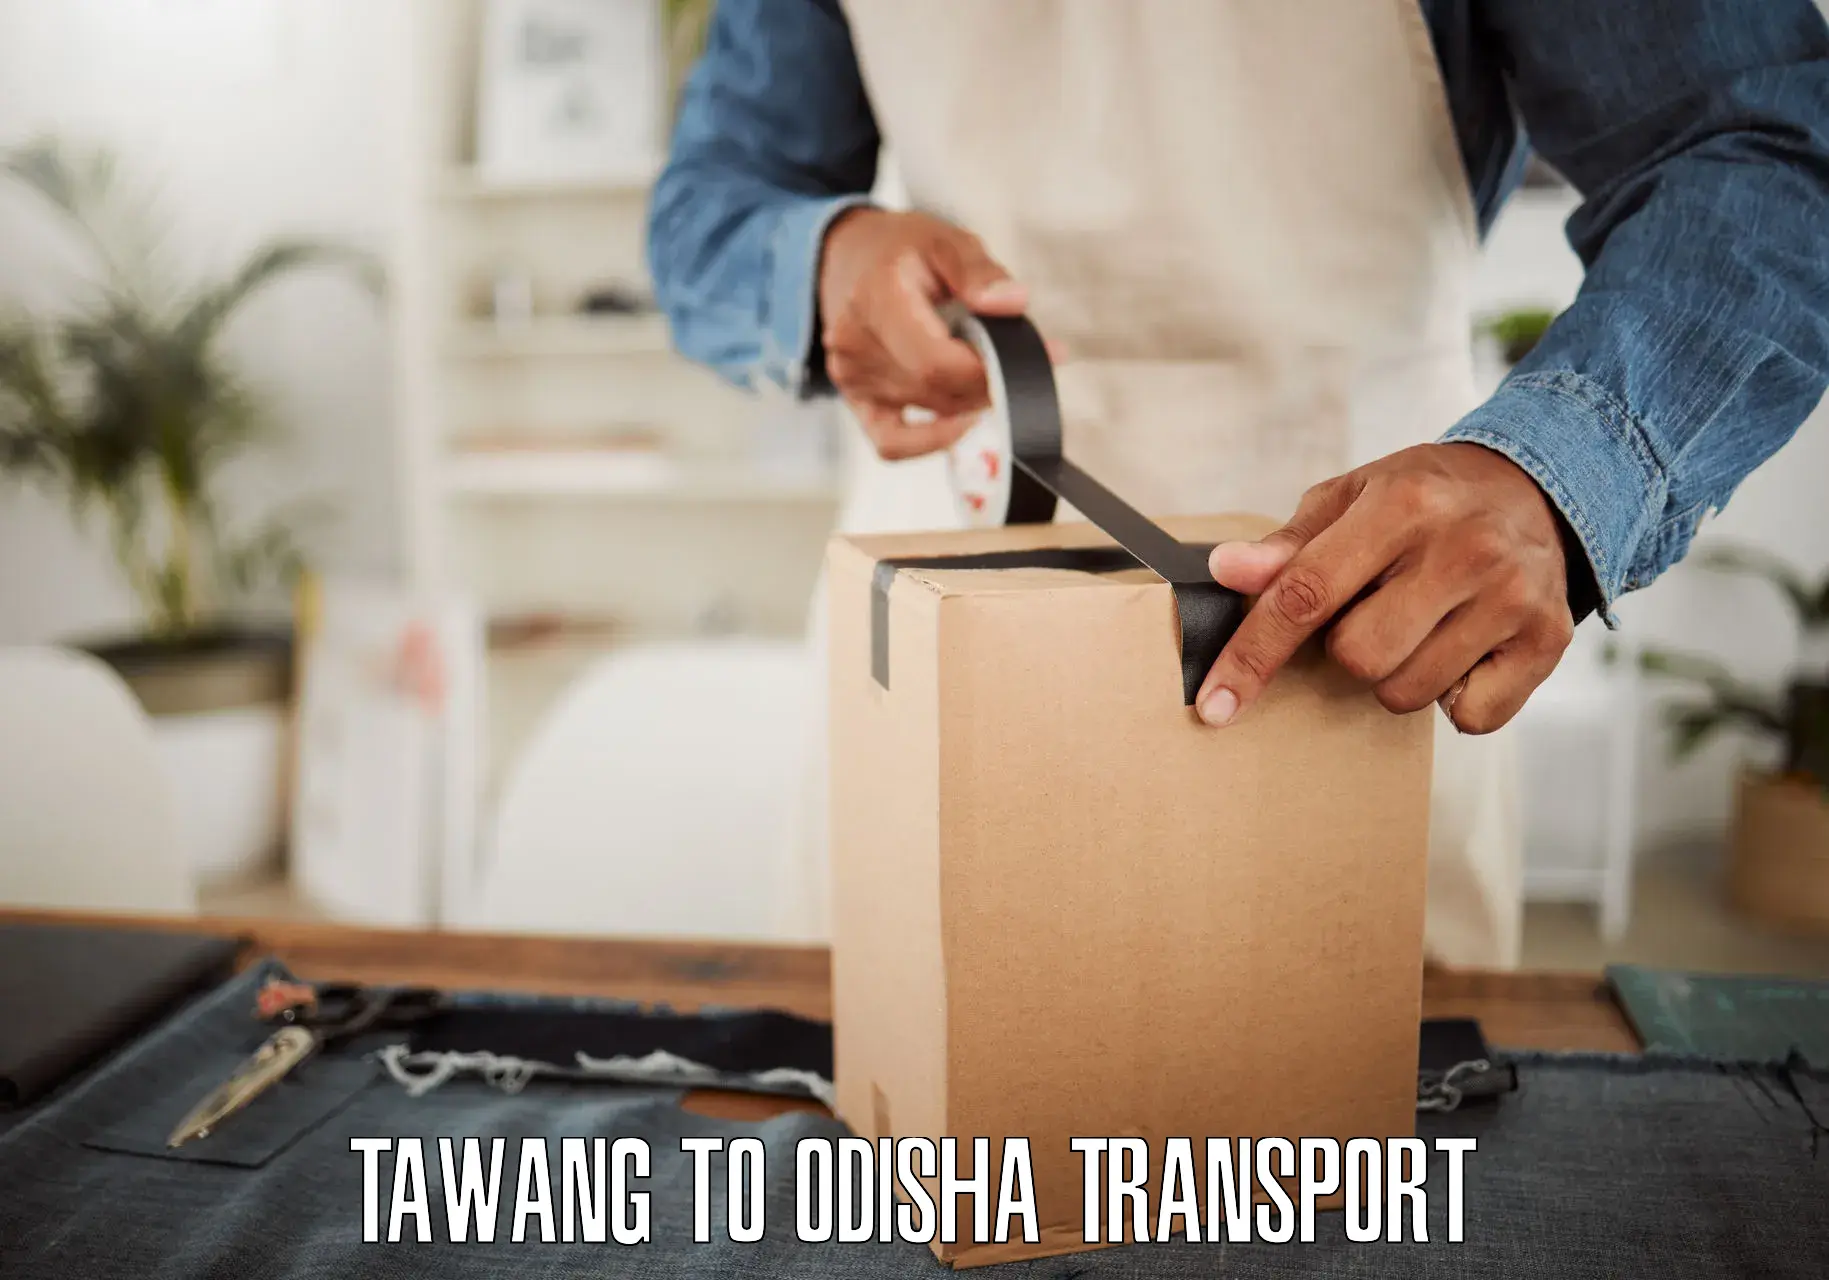 Road transport online services Tawang to Badagada